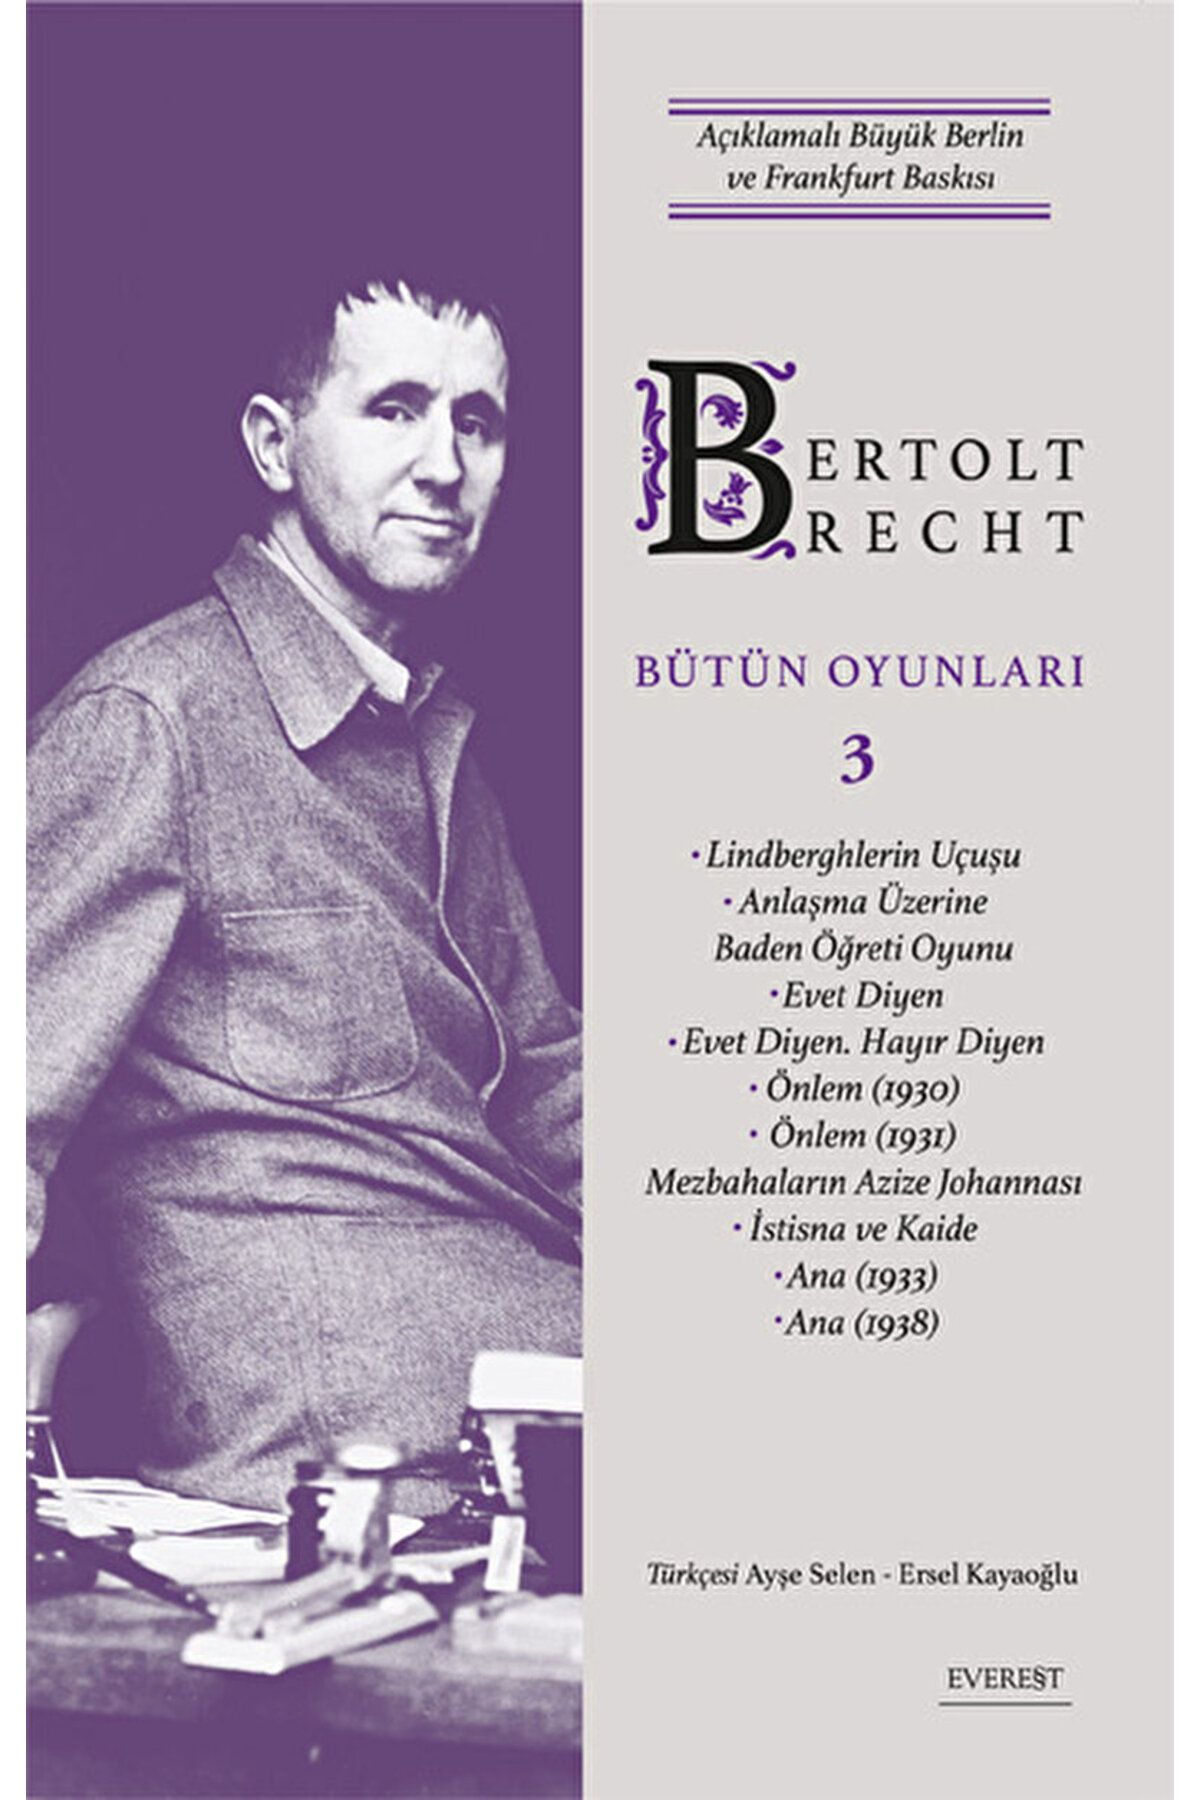 Everest Yayınları Bertolt Brecht Bütün Oyunları 3 / Bertolt Brecht / Everest Yayınları / 9786253690632